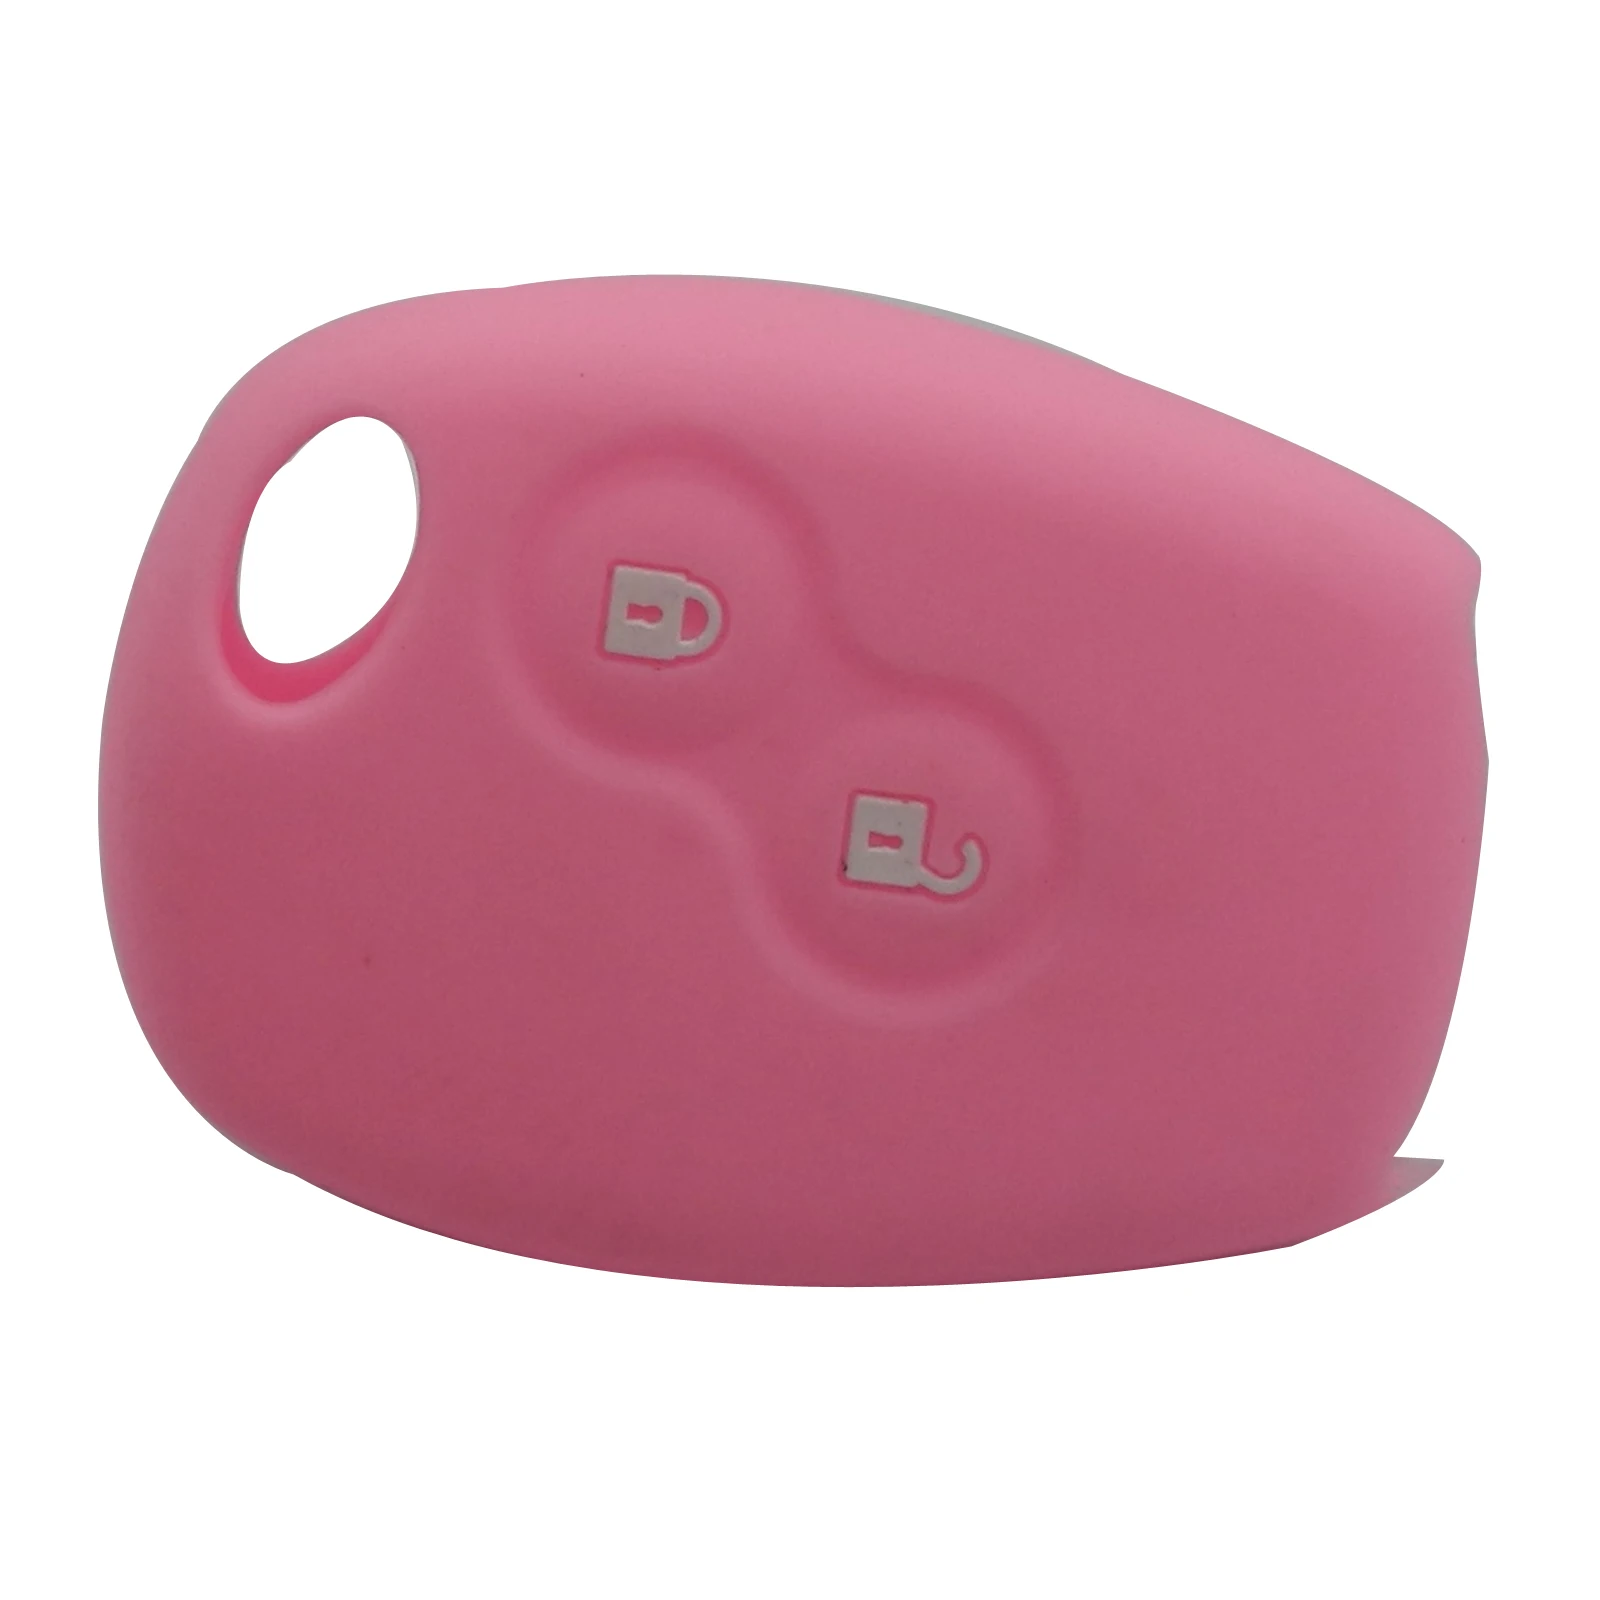 Jingyuqin пульт дистанционного управления 2 кнопки силиконовый резиновый чехол для ключей автомобиля для Renault Kangoo DACIA Scenic Megane Sandero Captur Twingo Modu - Название цвета: pink